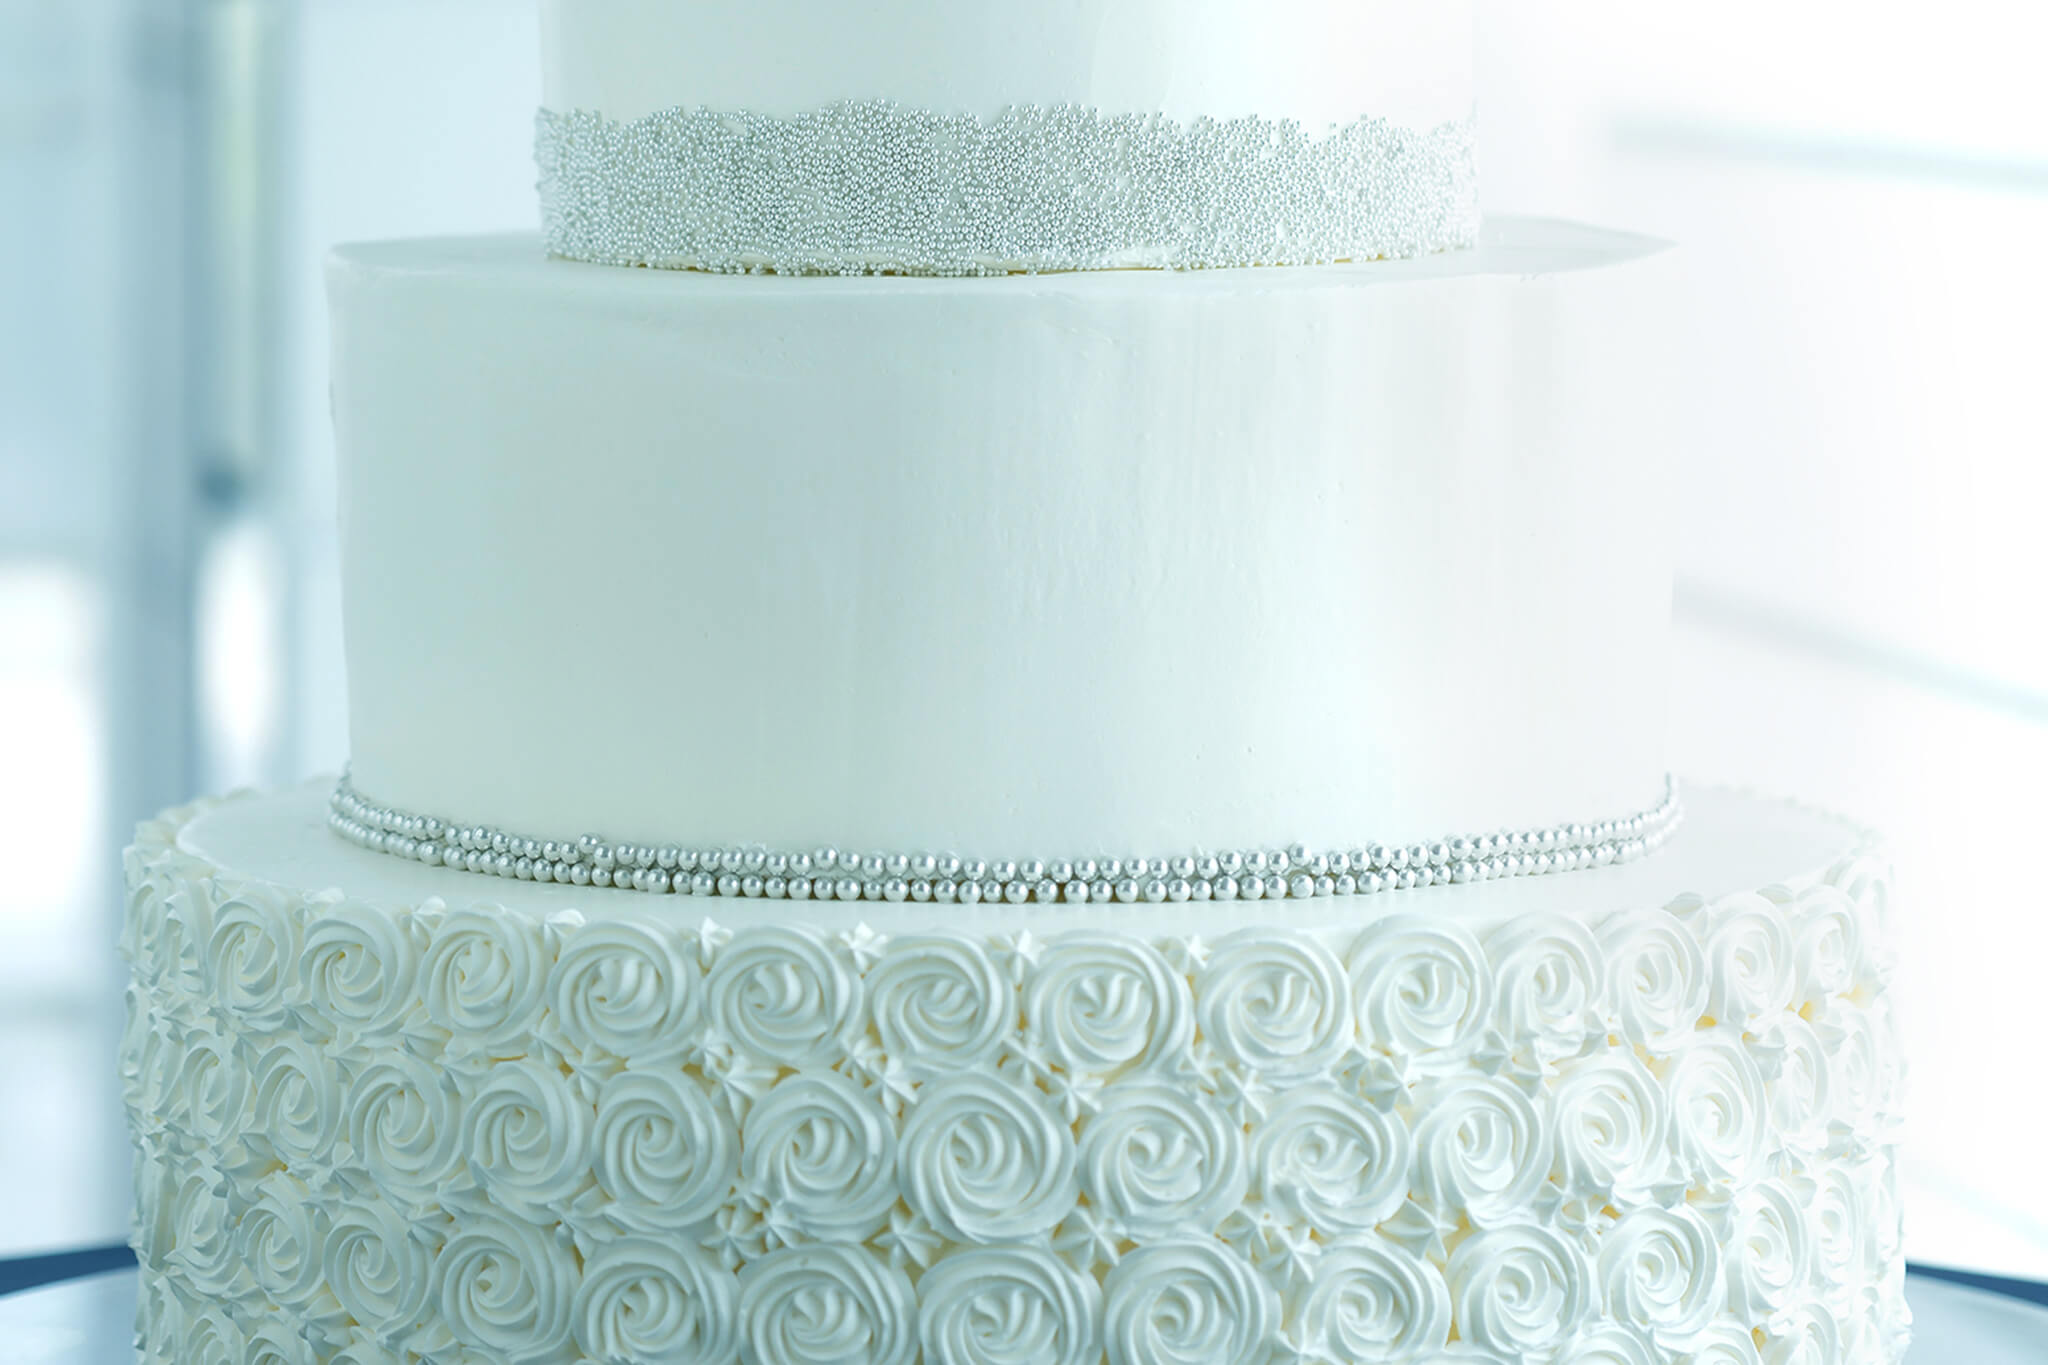 繊細なデコレーションが施された純白のウェディングケーキの写真